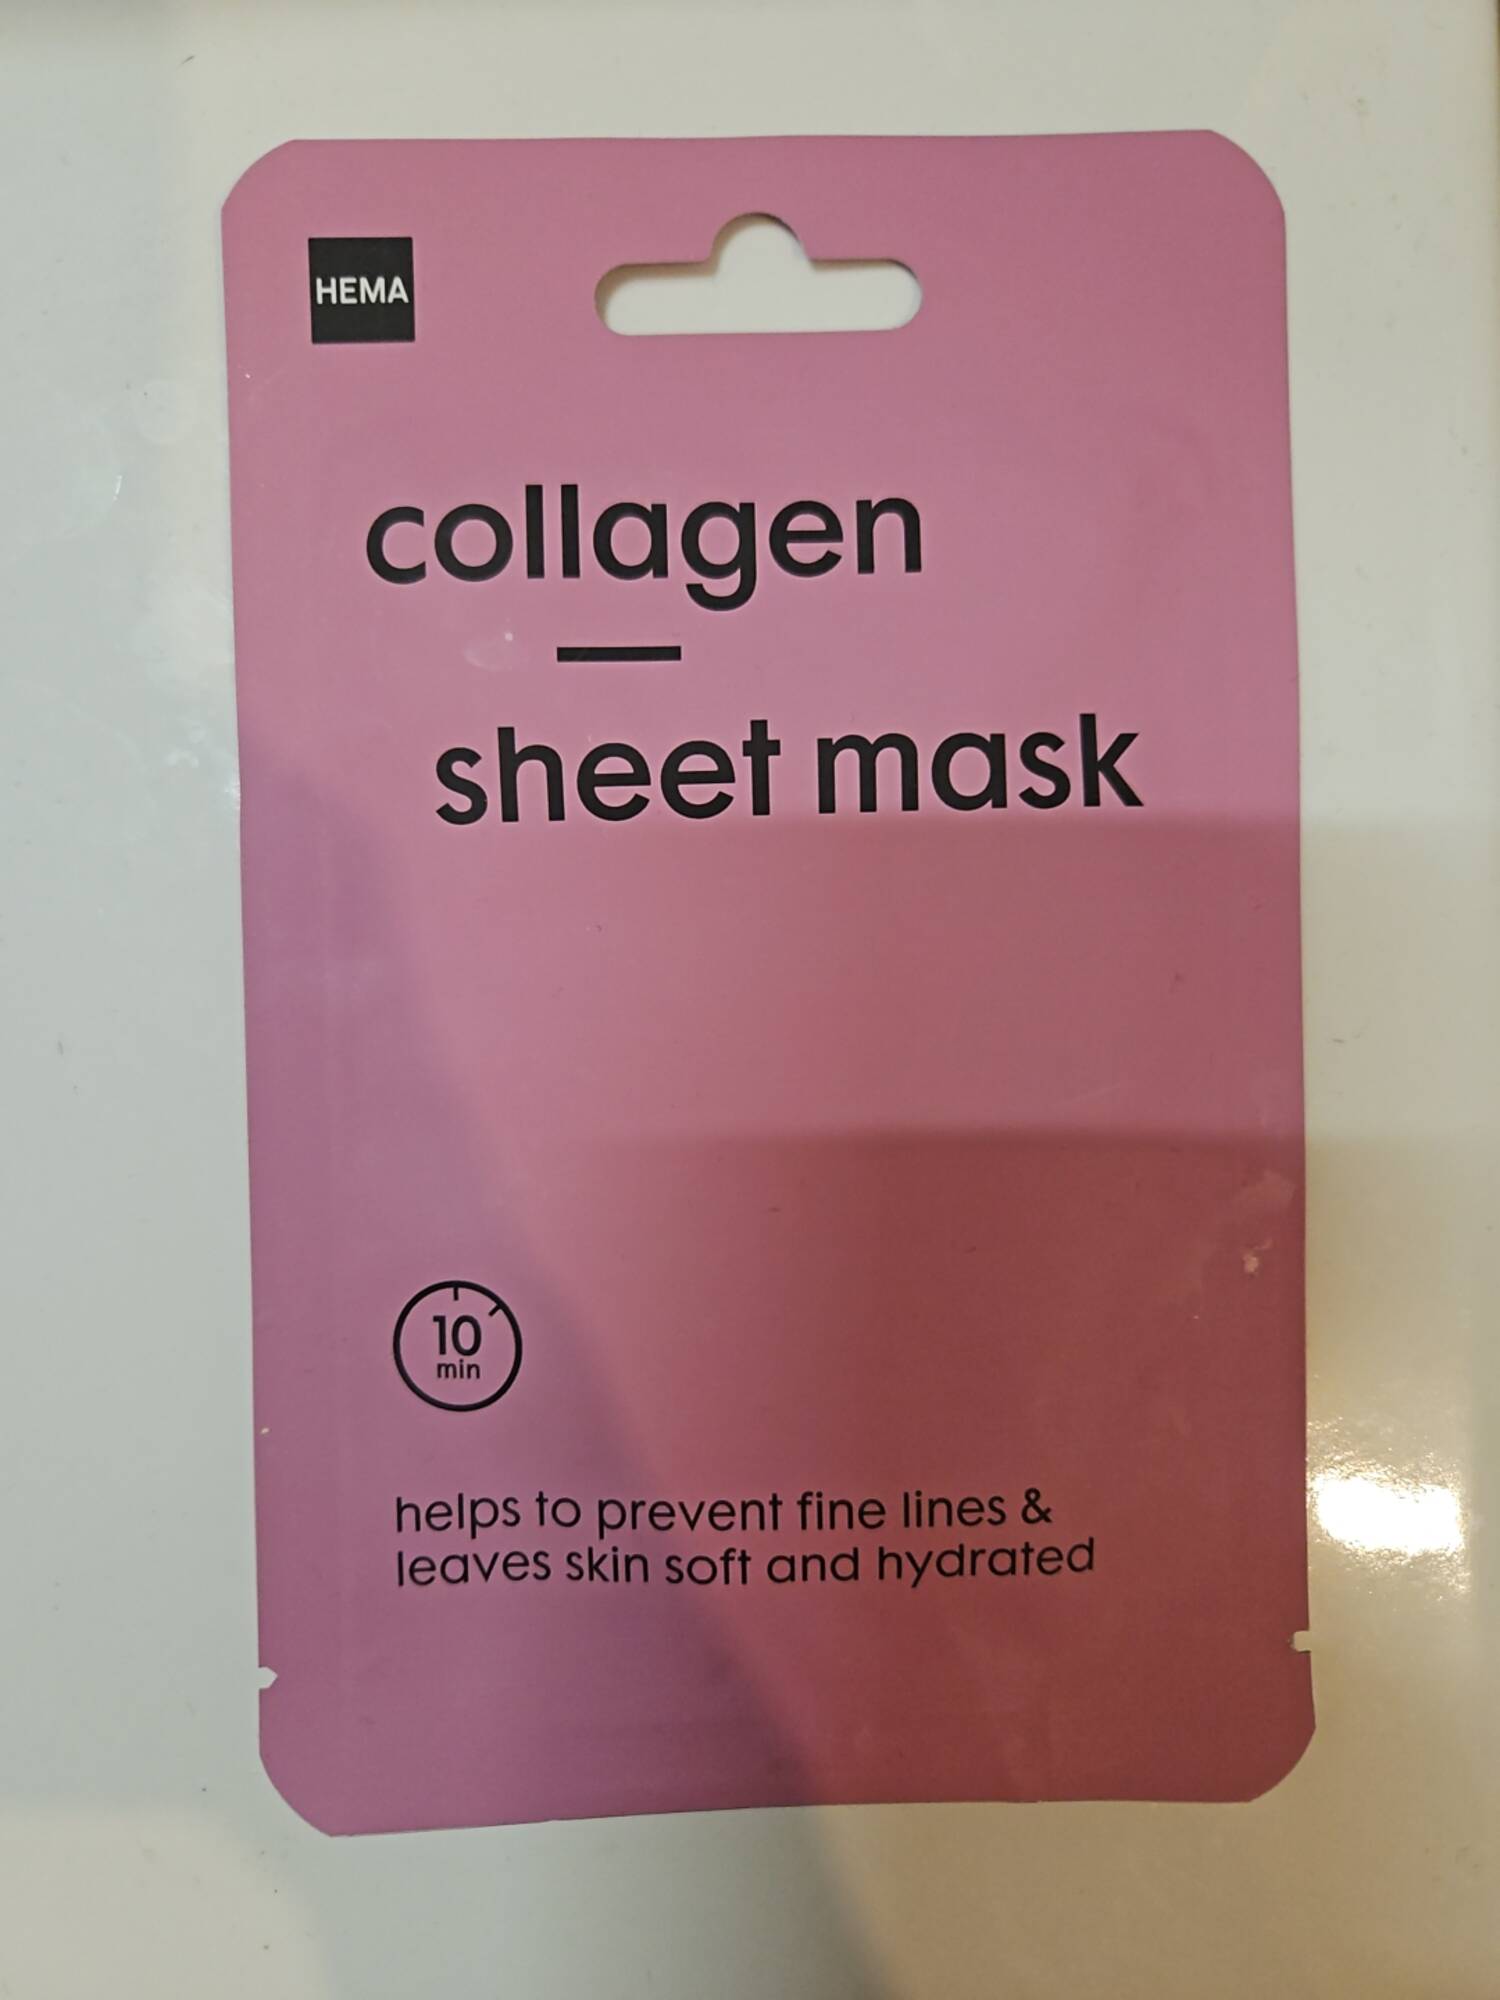 HEMA - Collagen sheet mask